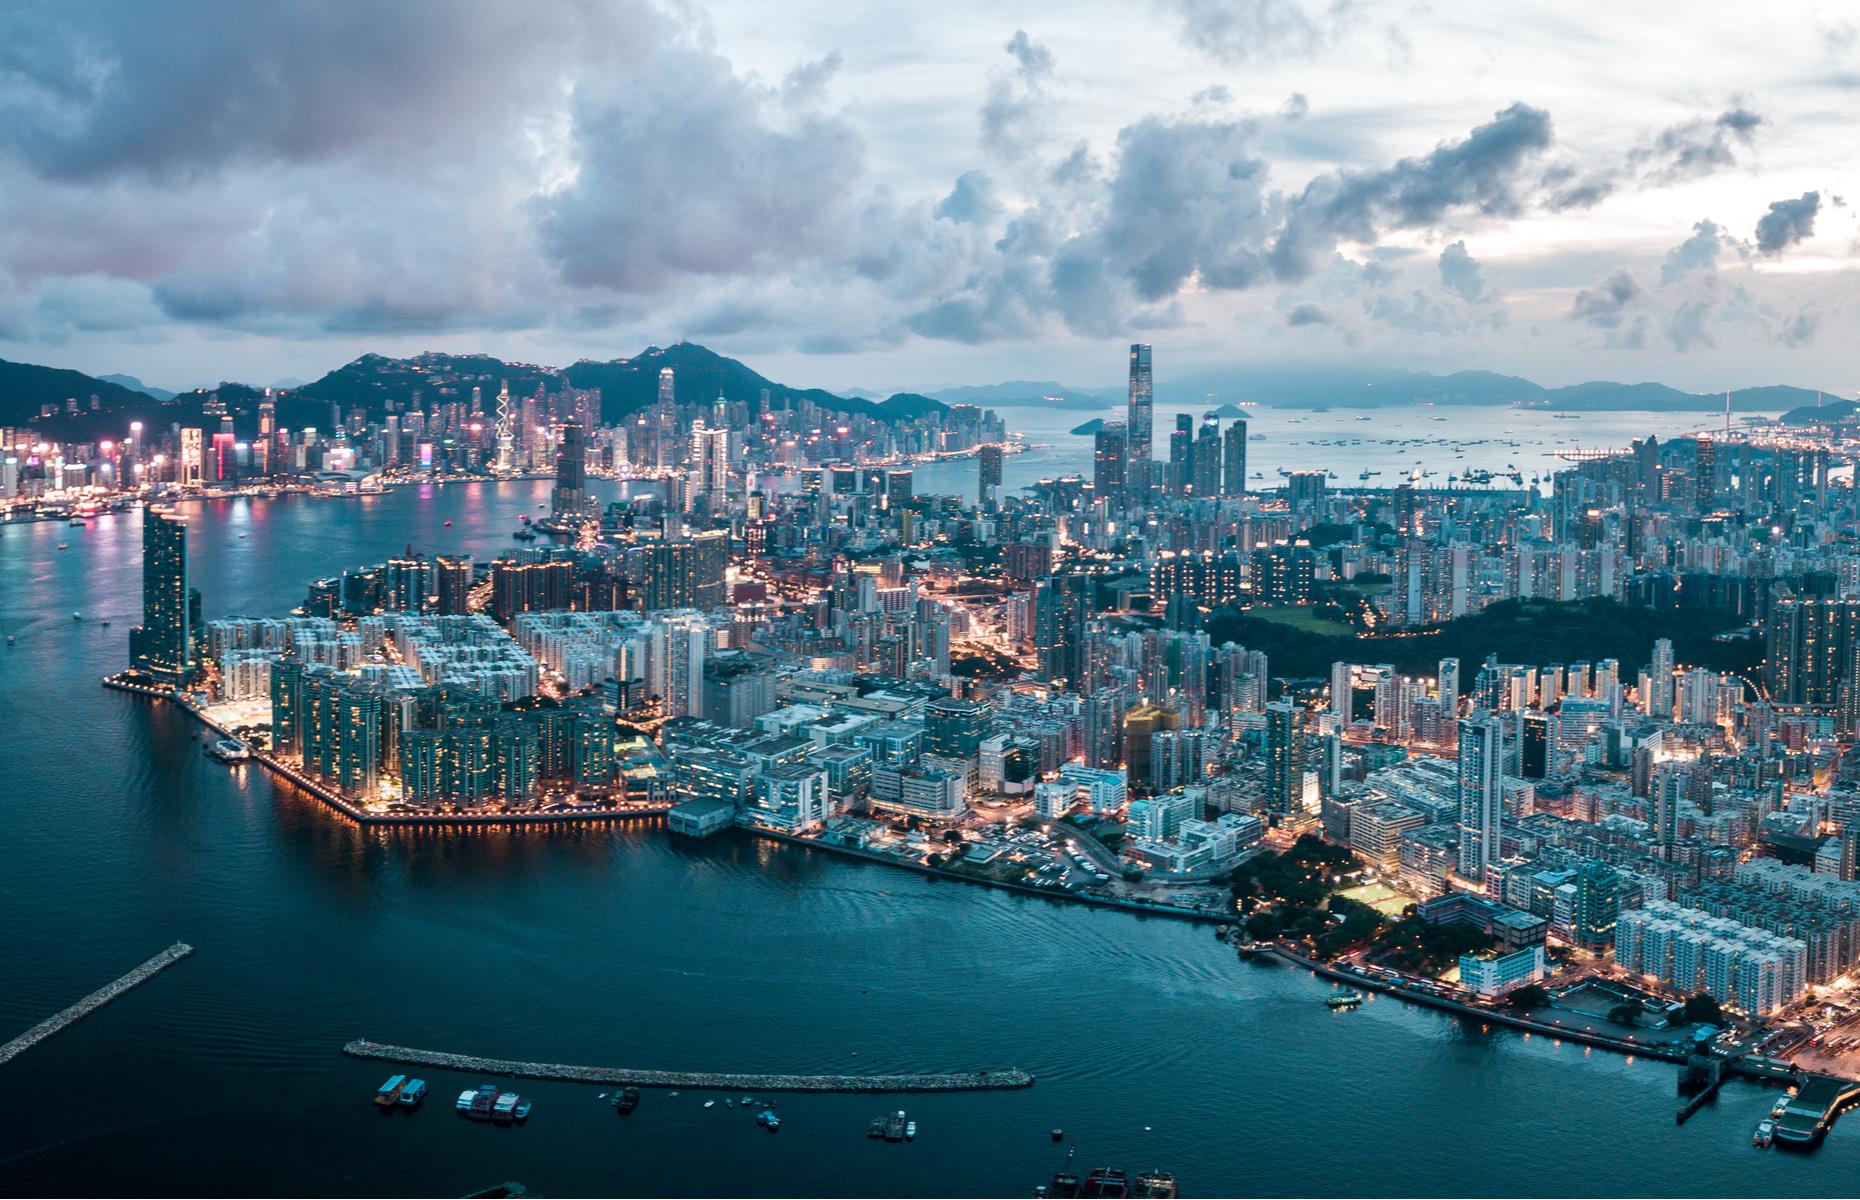 4th most expensive: Hong Kong, China